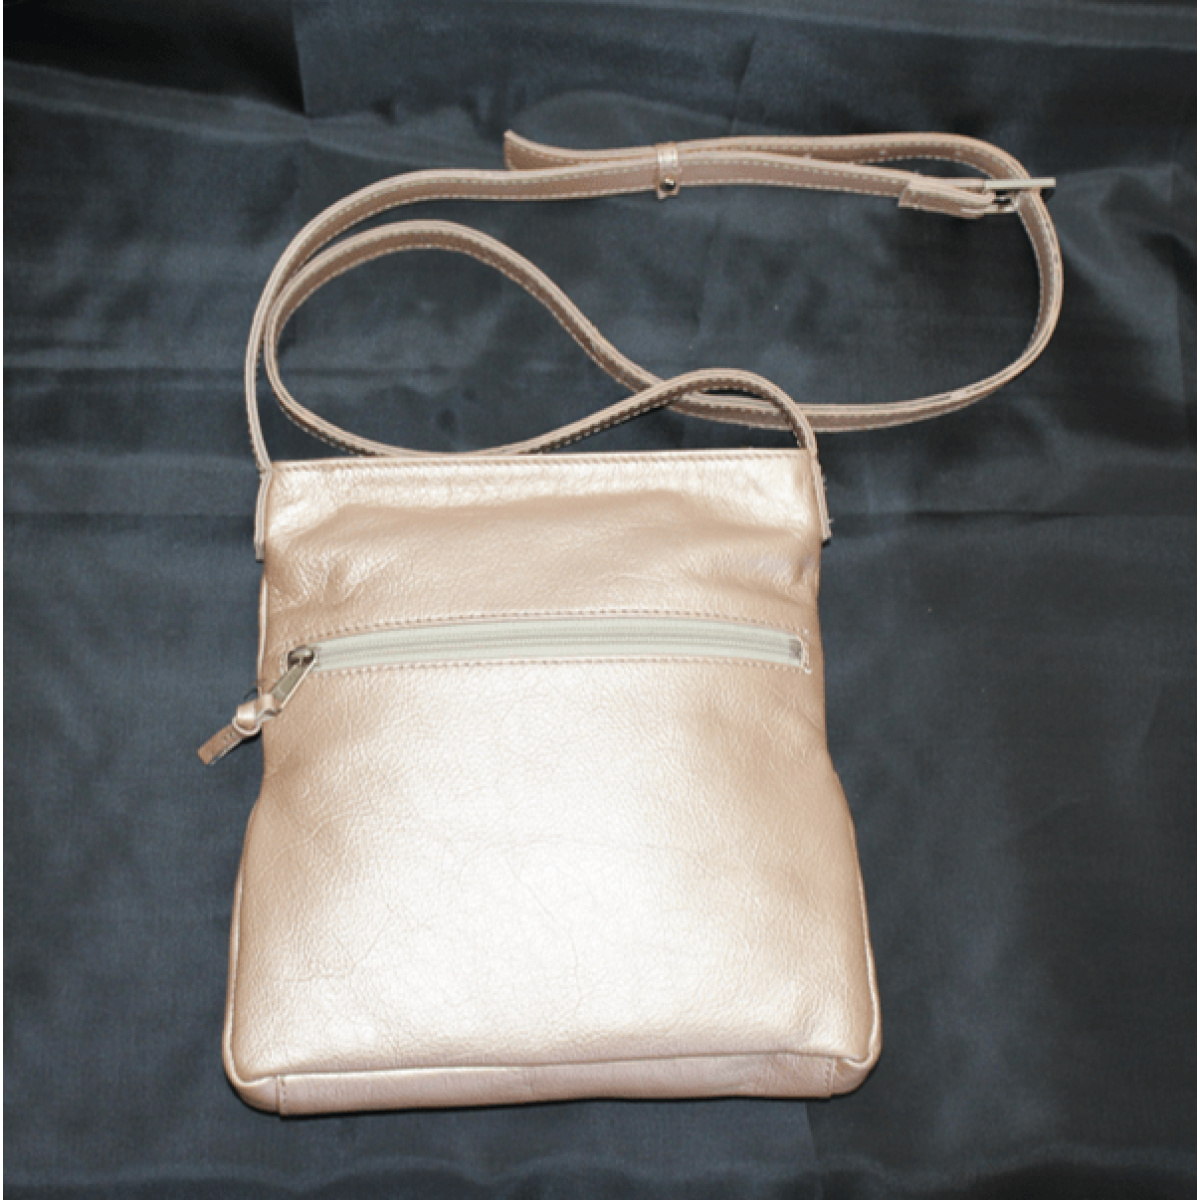 CLN sling bag preloved